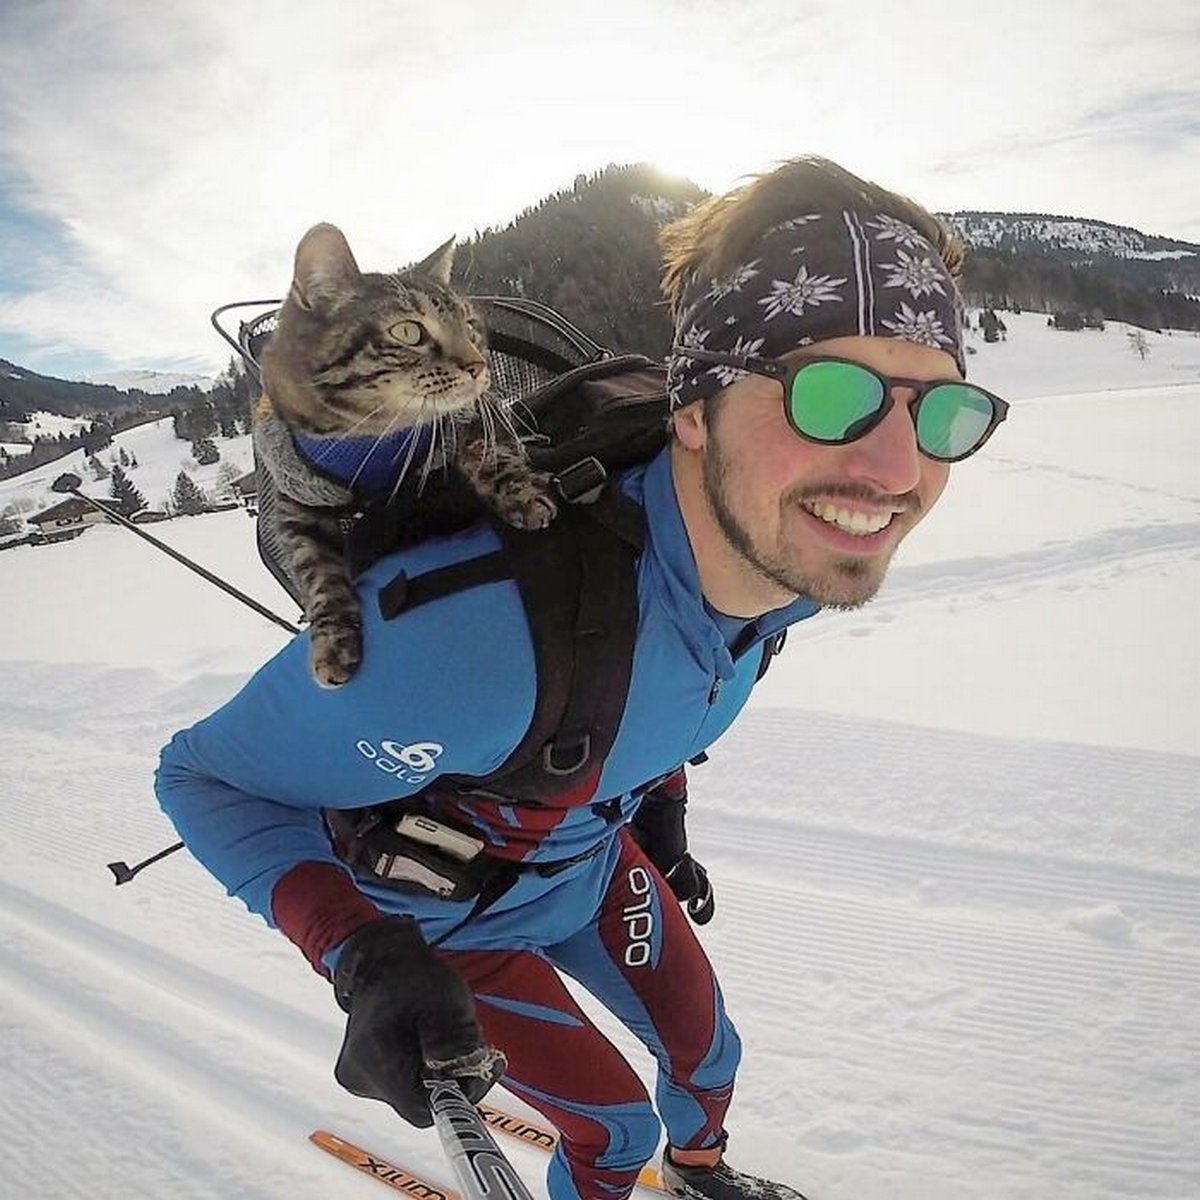 Cet homme emmène sa chatte partout où il va et ils vivent toutes sortes d’aventures ensemble